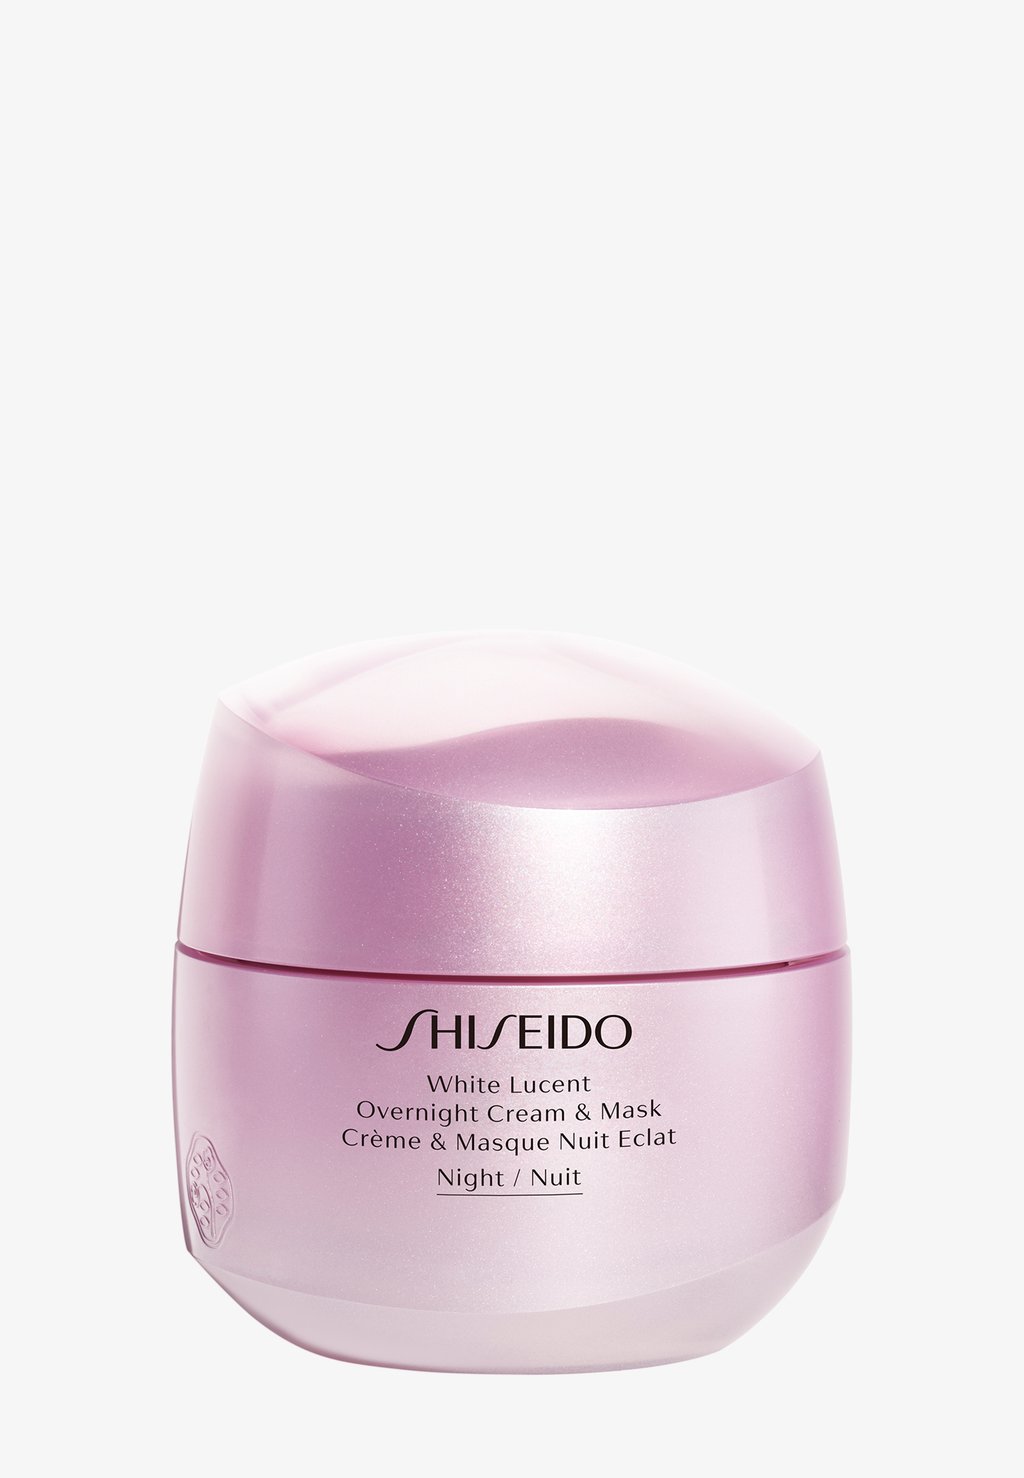 Дневной крем White Lucent Ночной Крем И Маска Shiseido